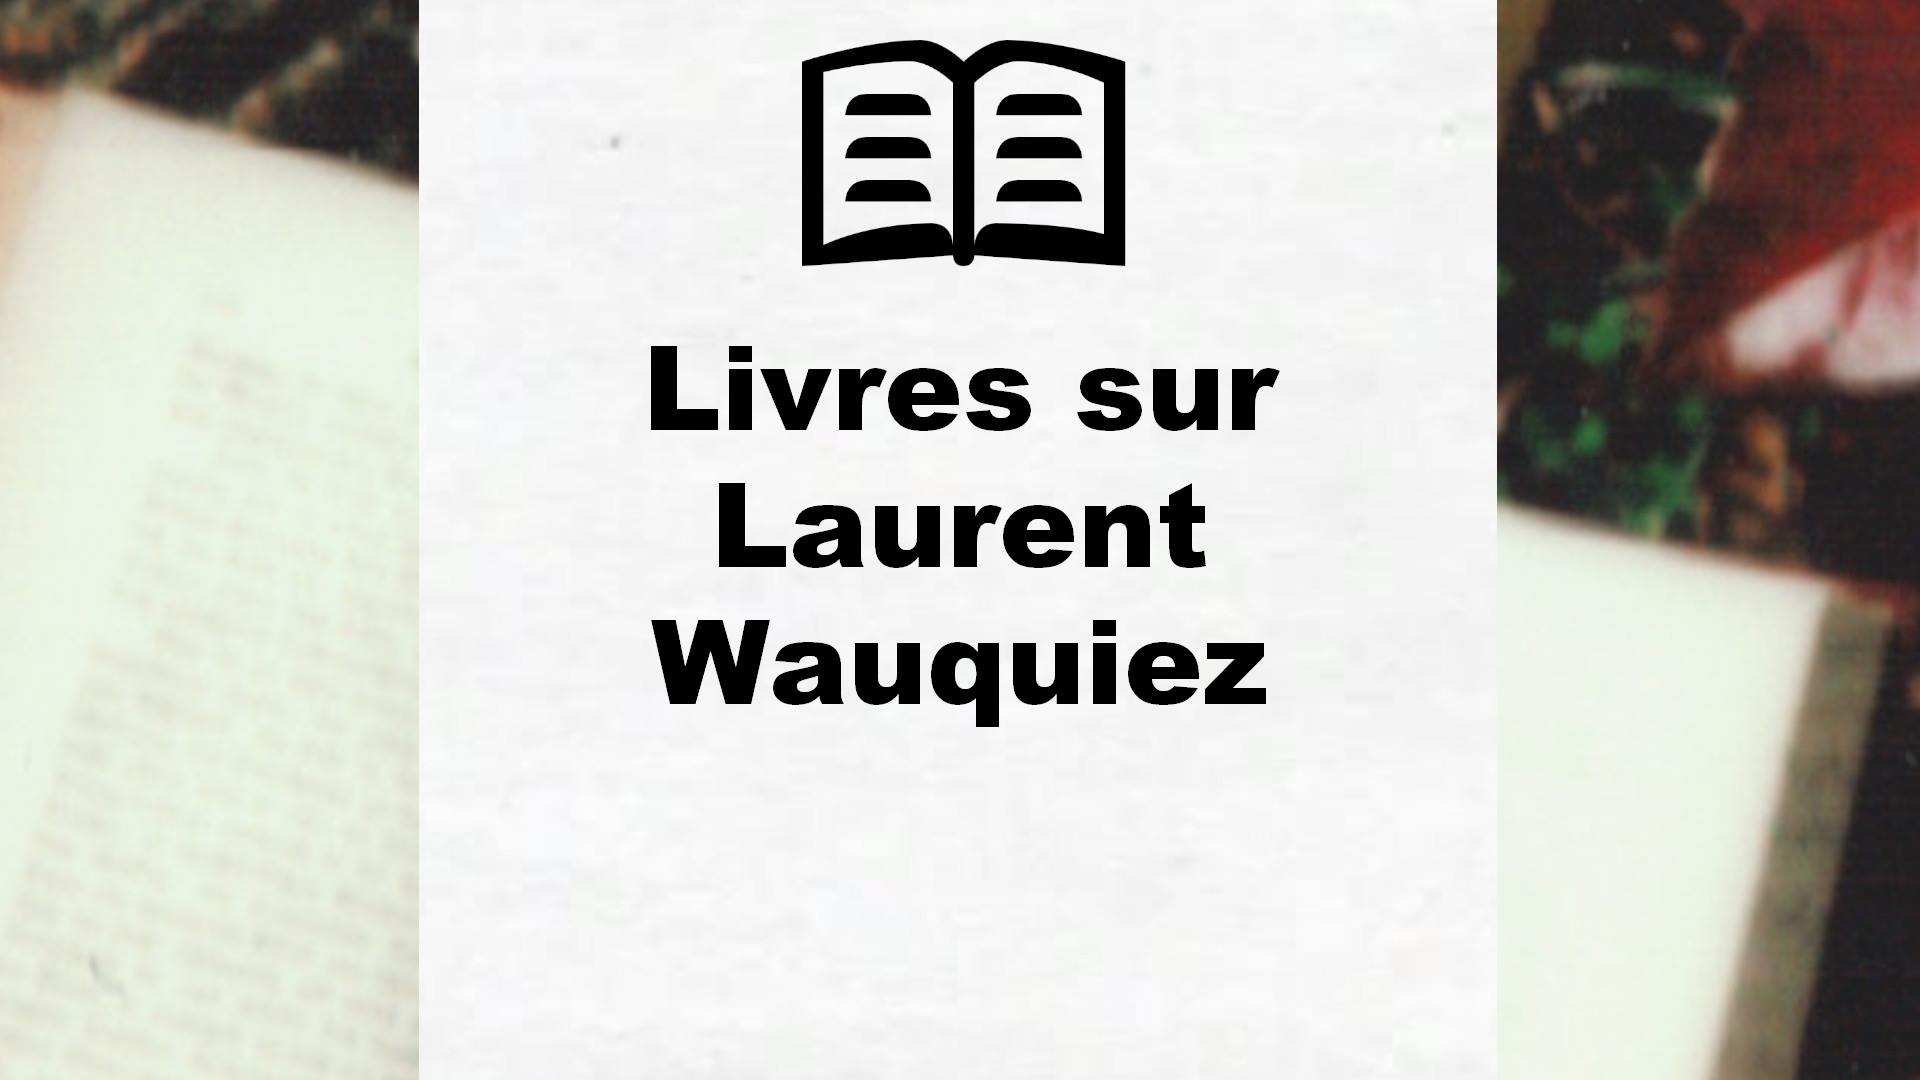 Livres sur Laurent Wauquiez